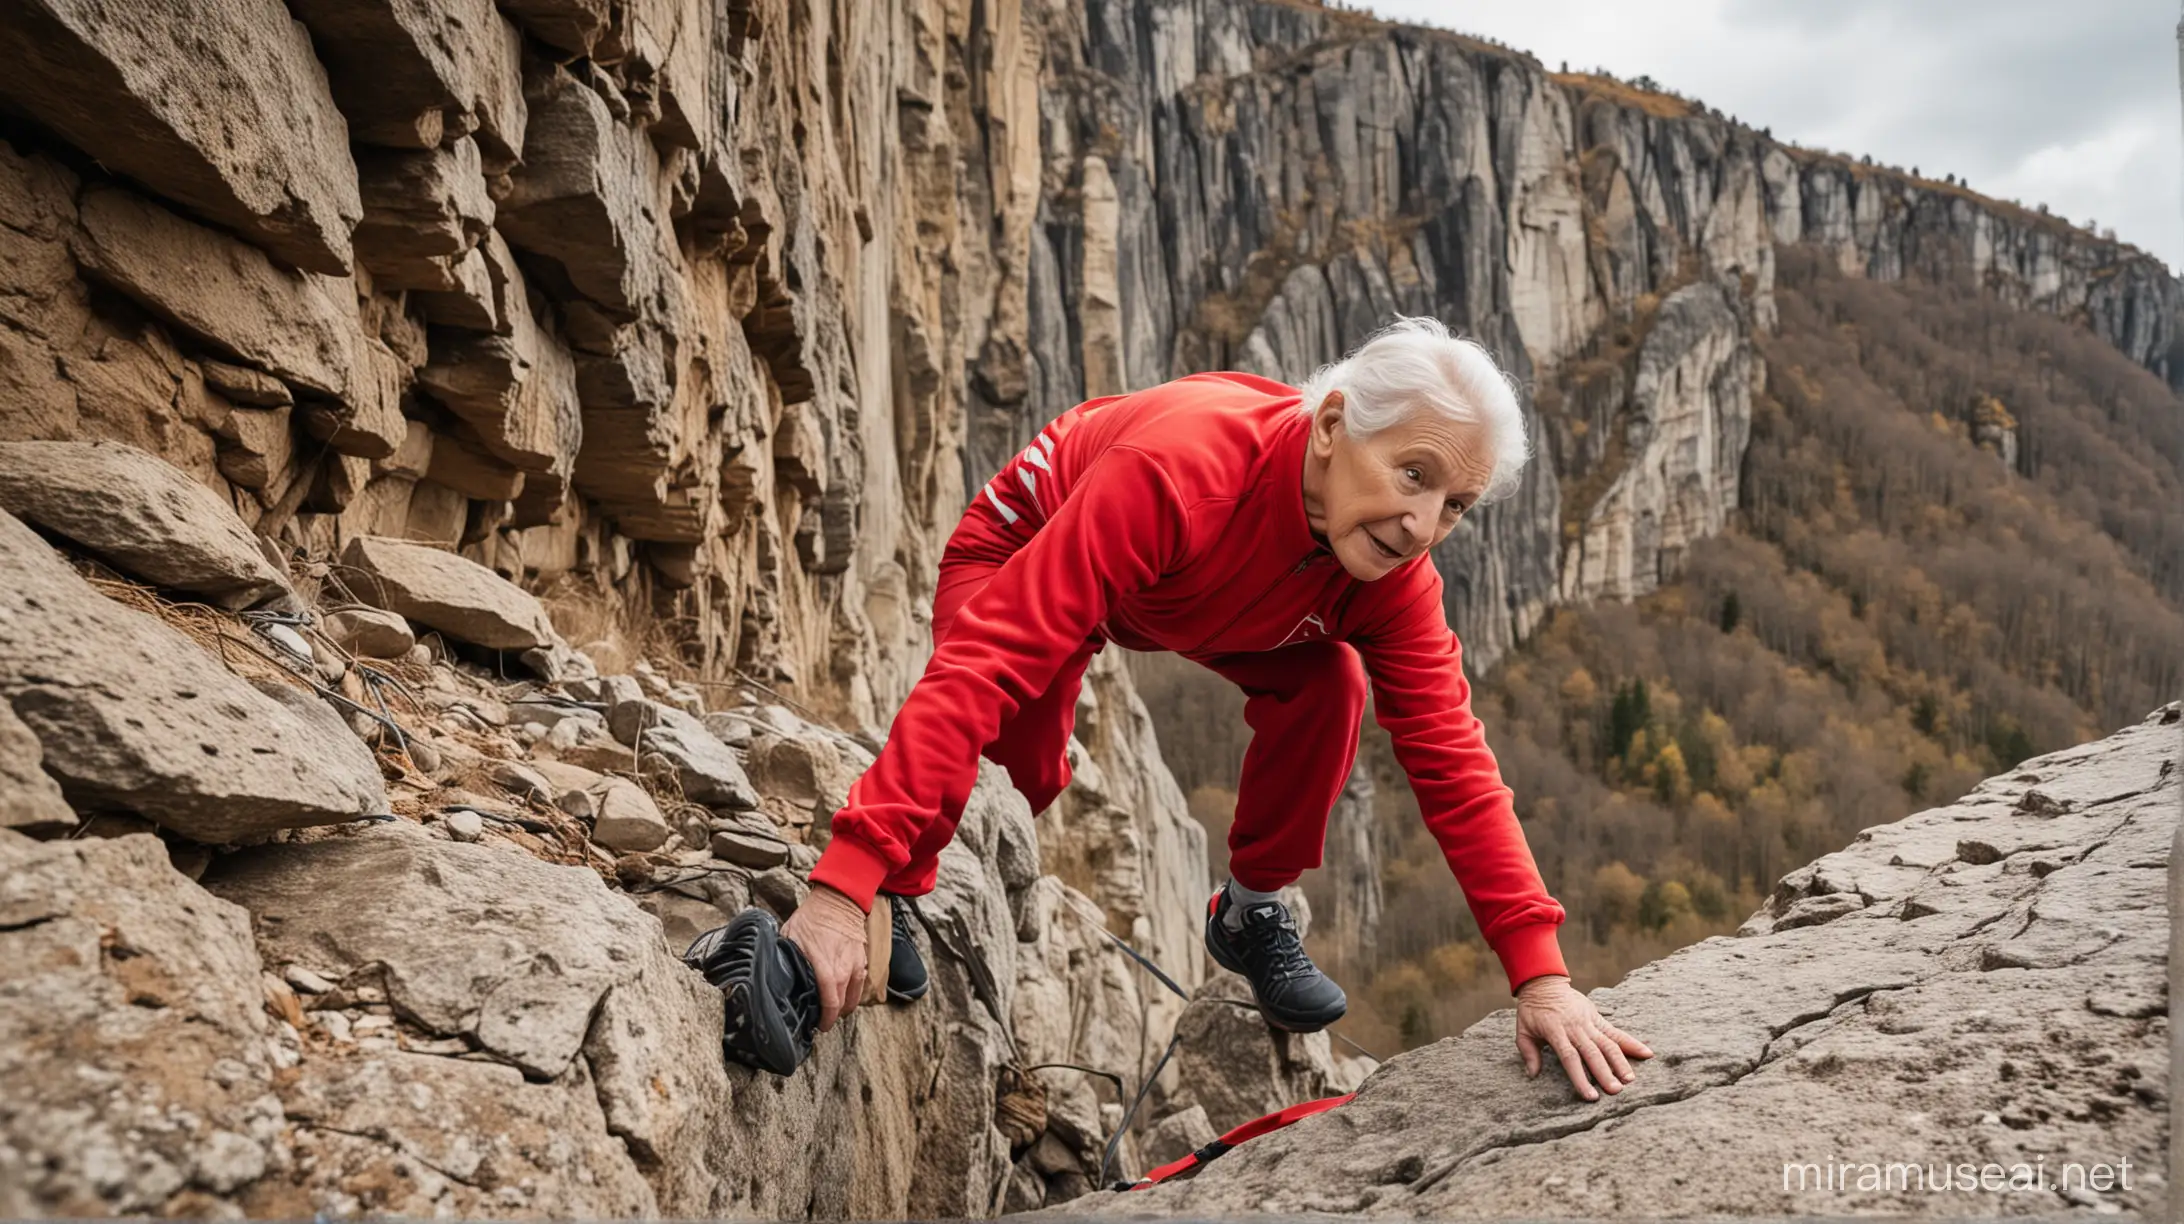 一个身穿红色运动服的老人在艰难地攀登悬崖